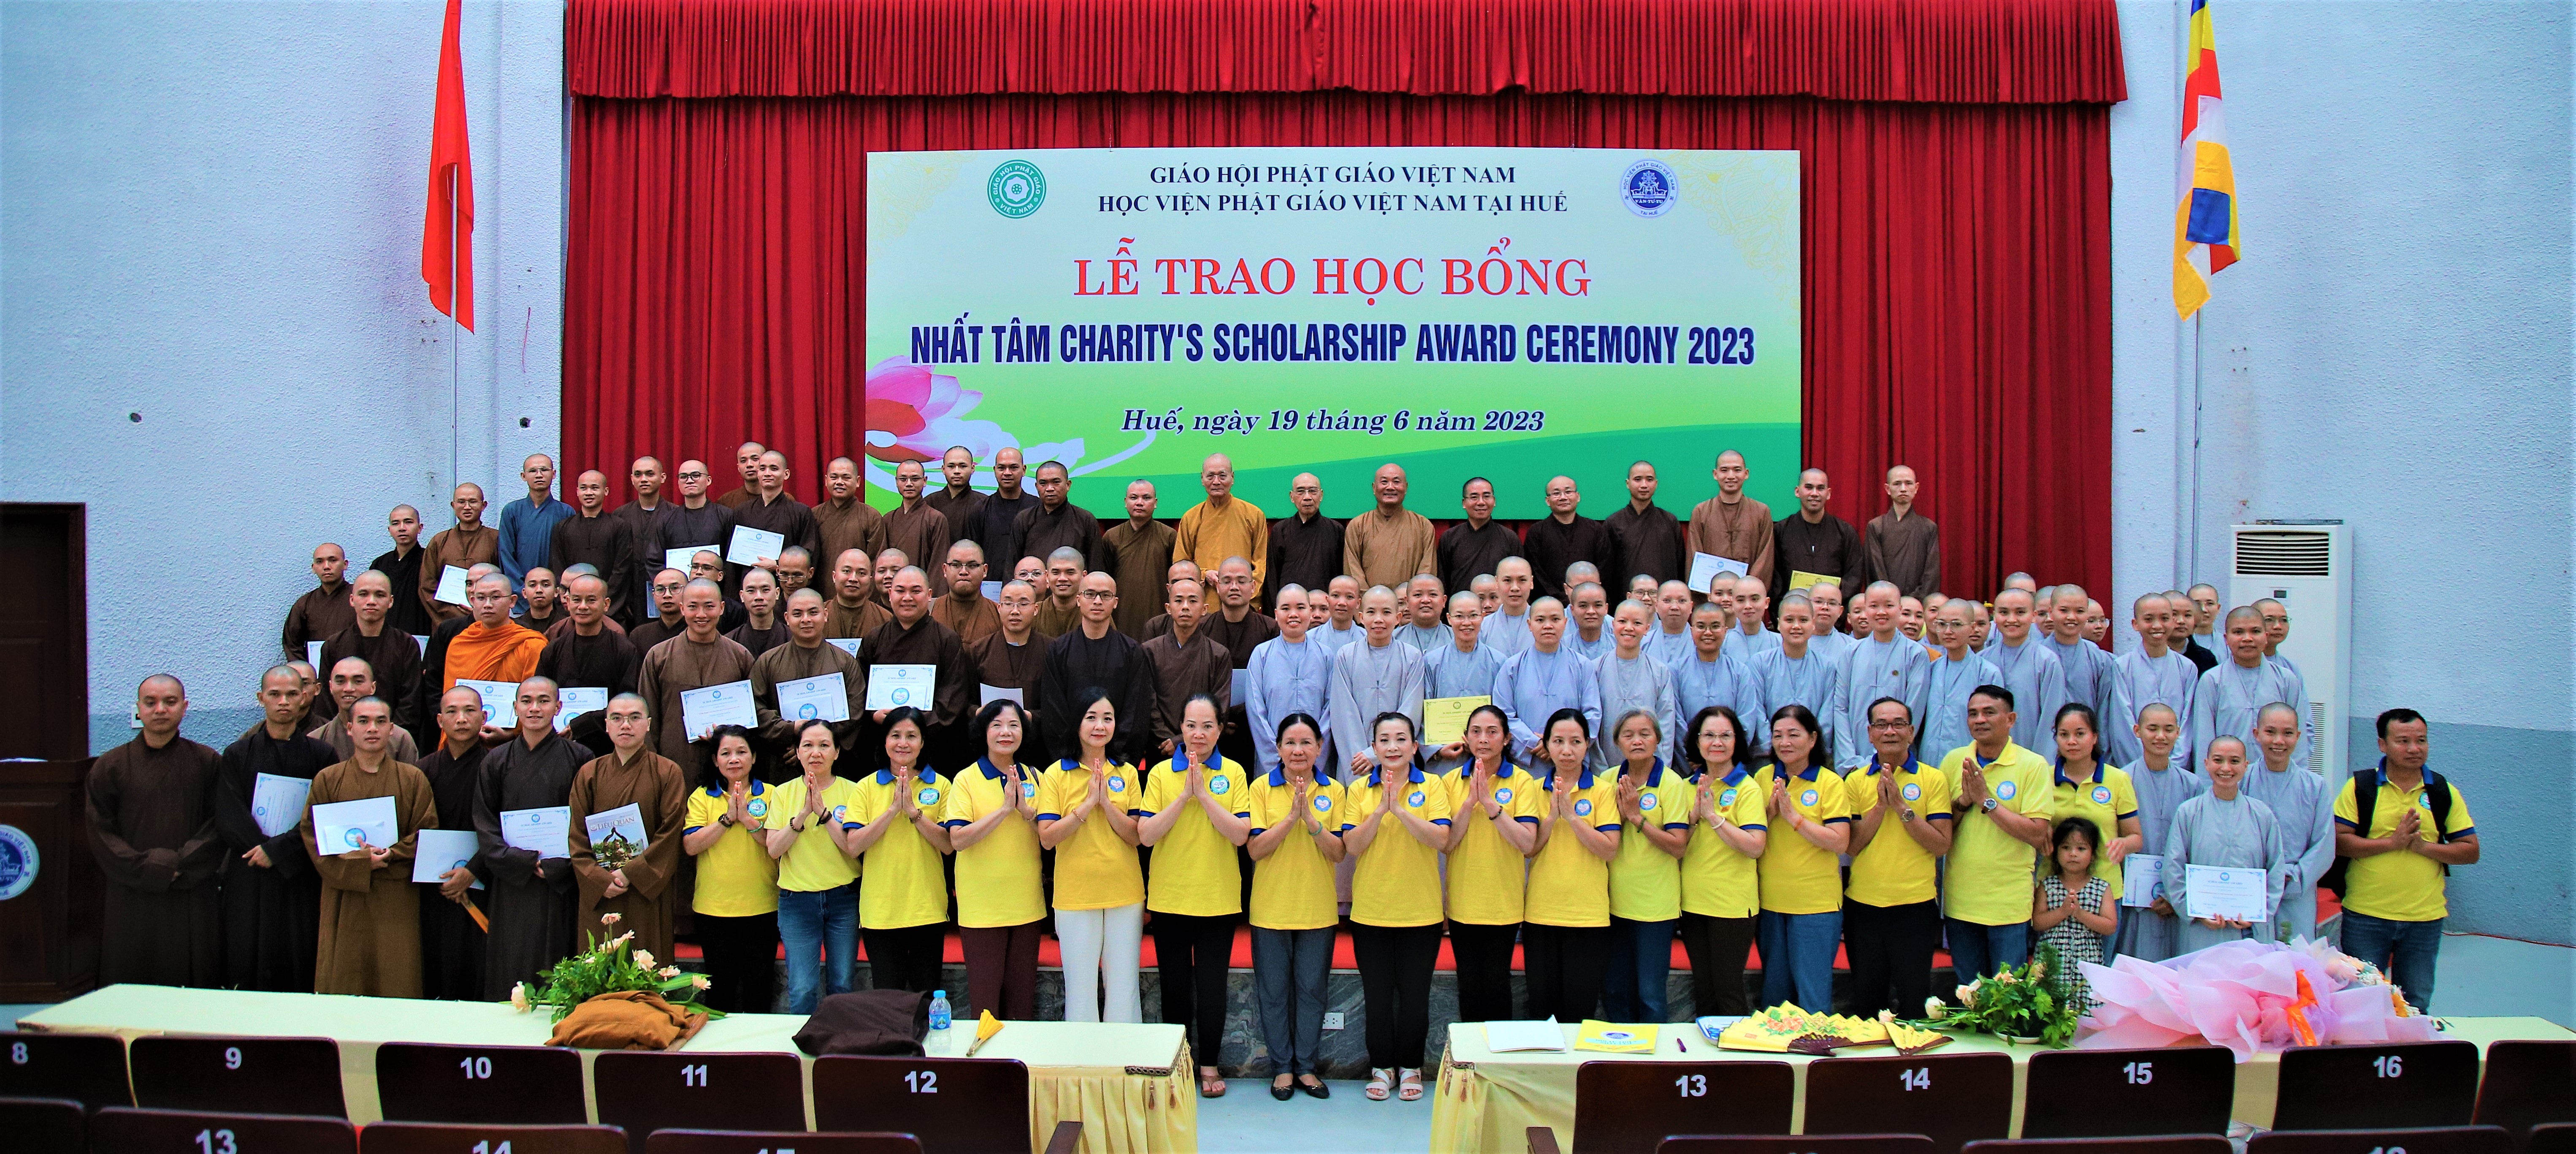 150 suất học bổng được trao đến Tăng Ni sinh Học viện PGVN tại Huế